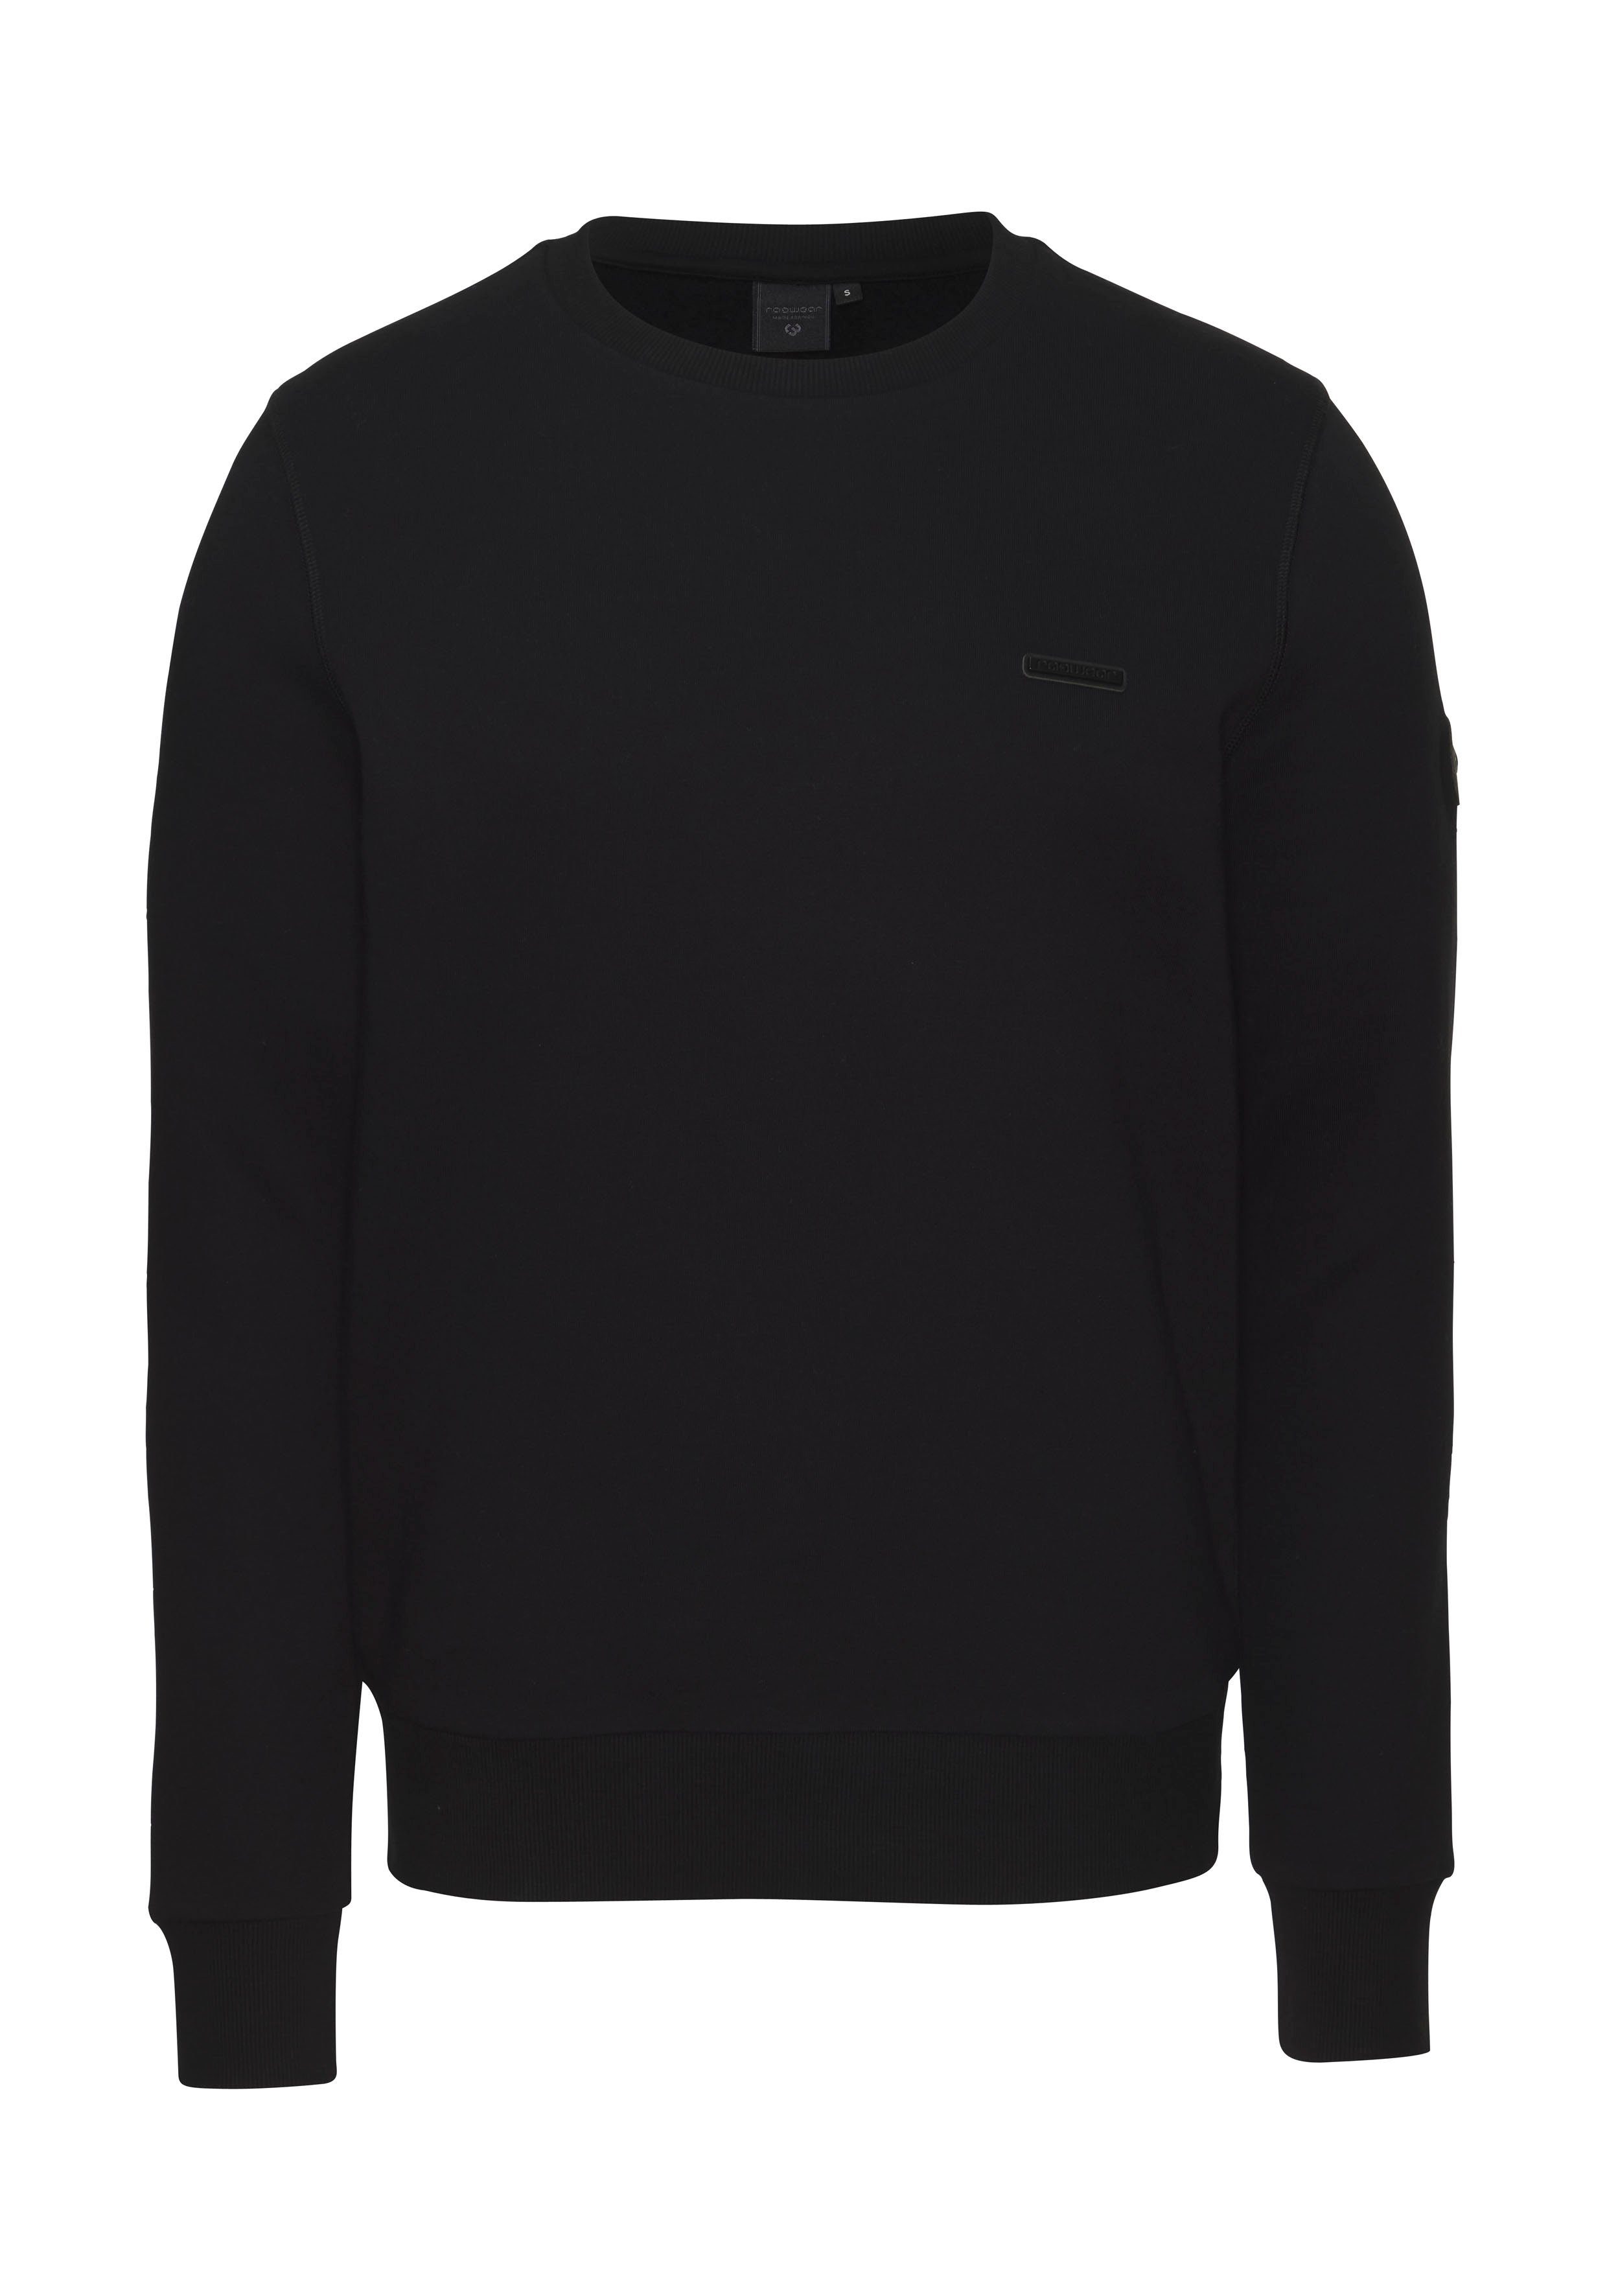 Ragwear Sweatshirt INDDIE CORE schöner Basic Sweater im Relax Fit